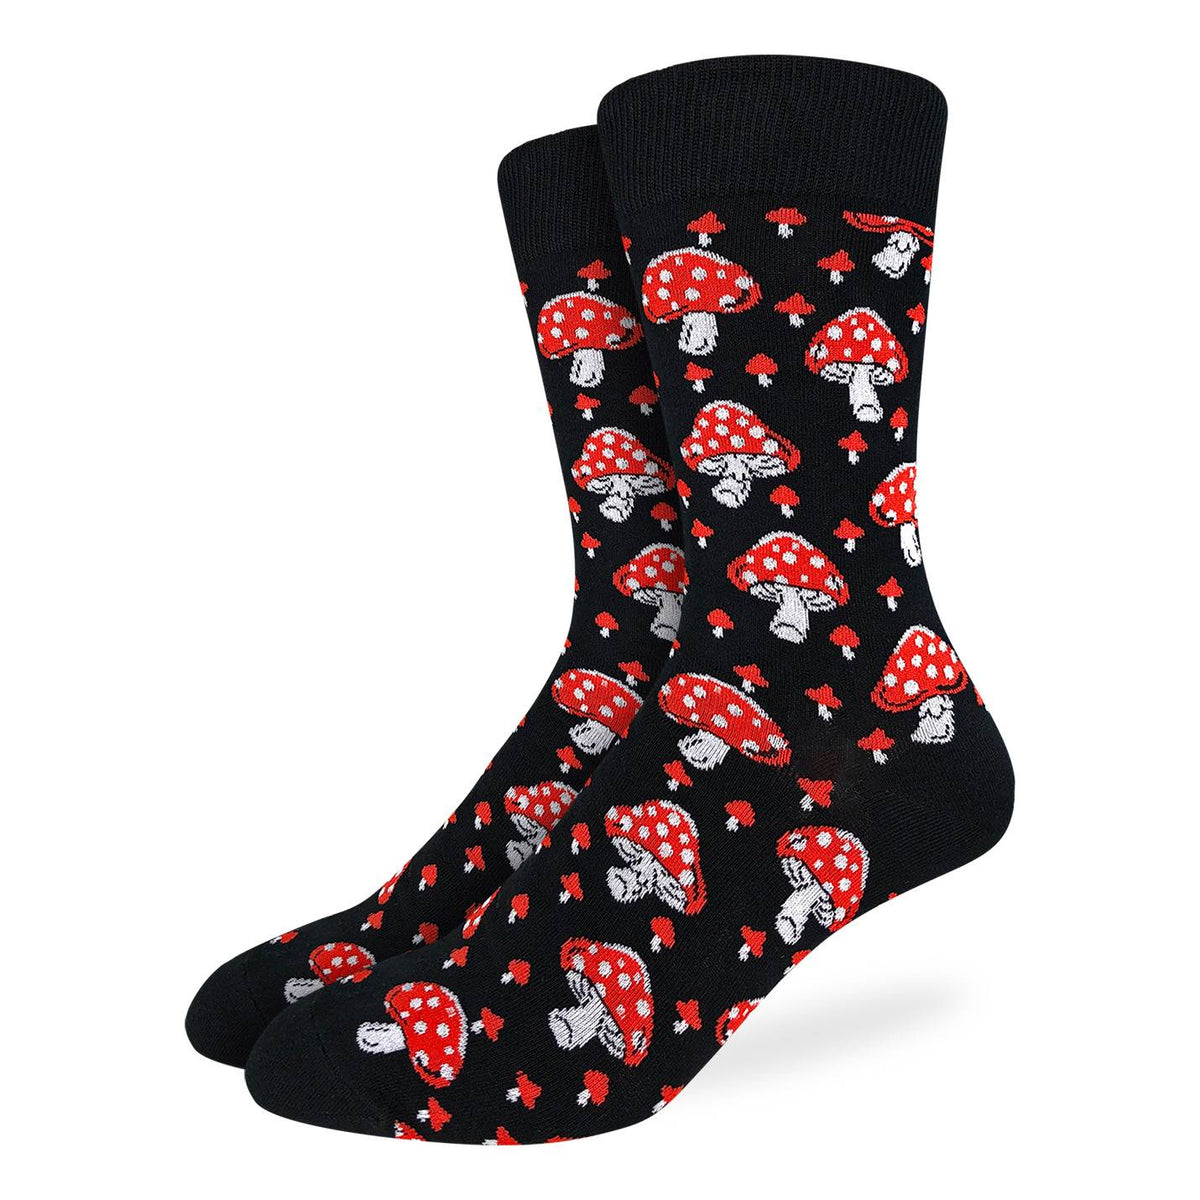 Men's Amanita Mushrooms Socks